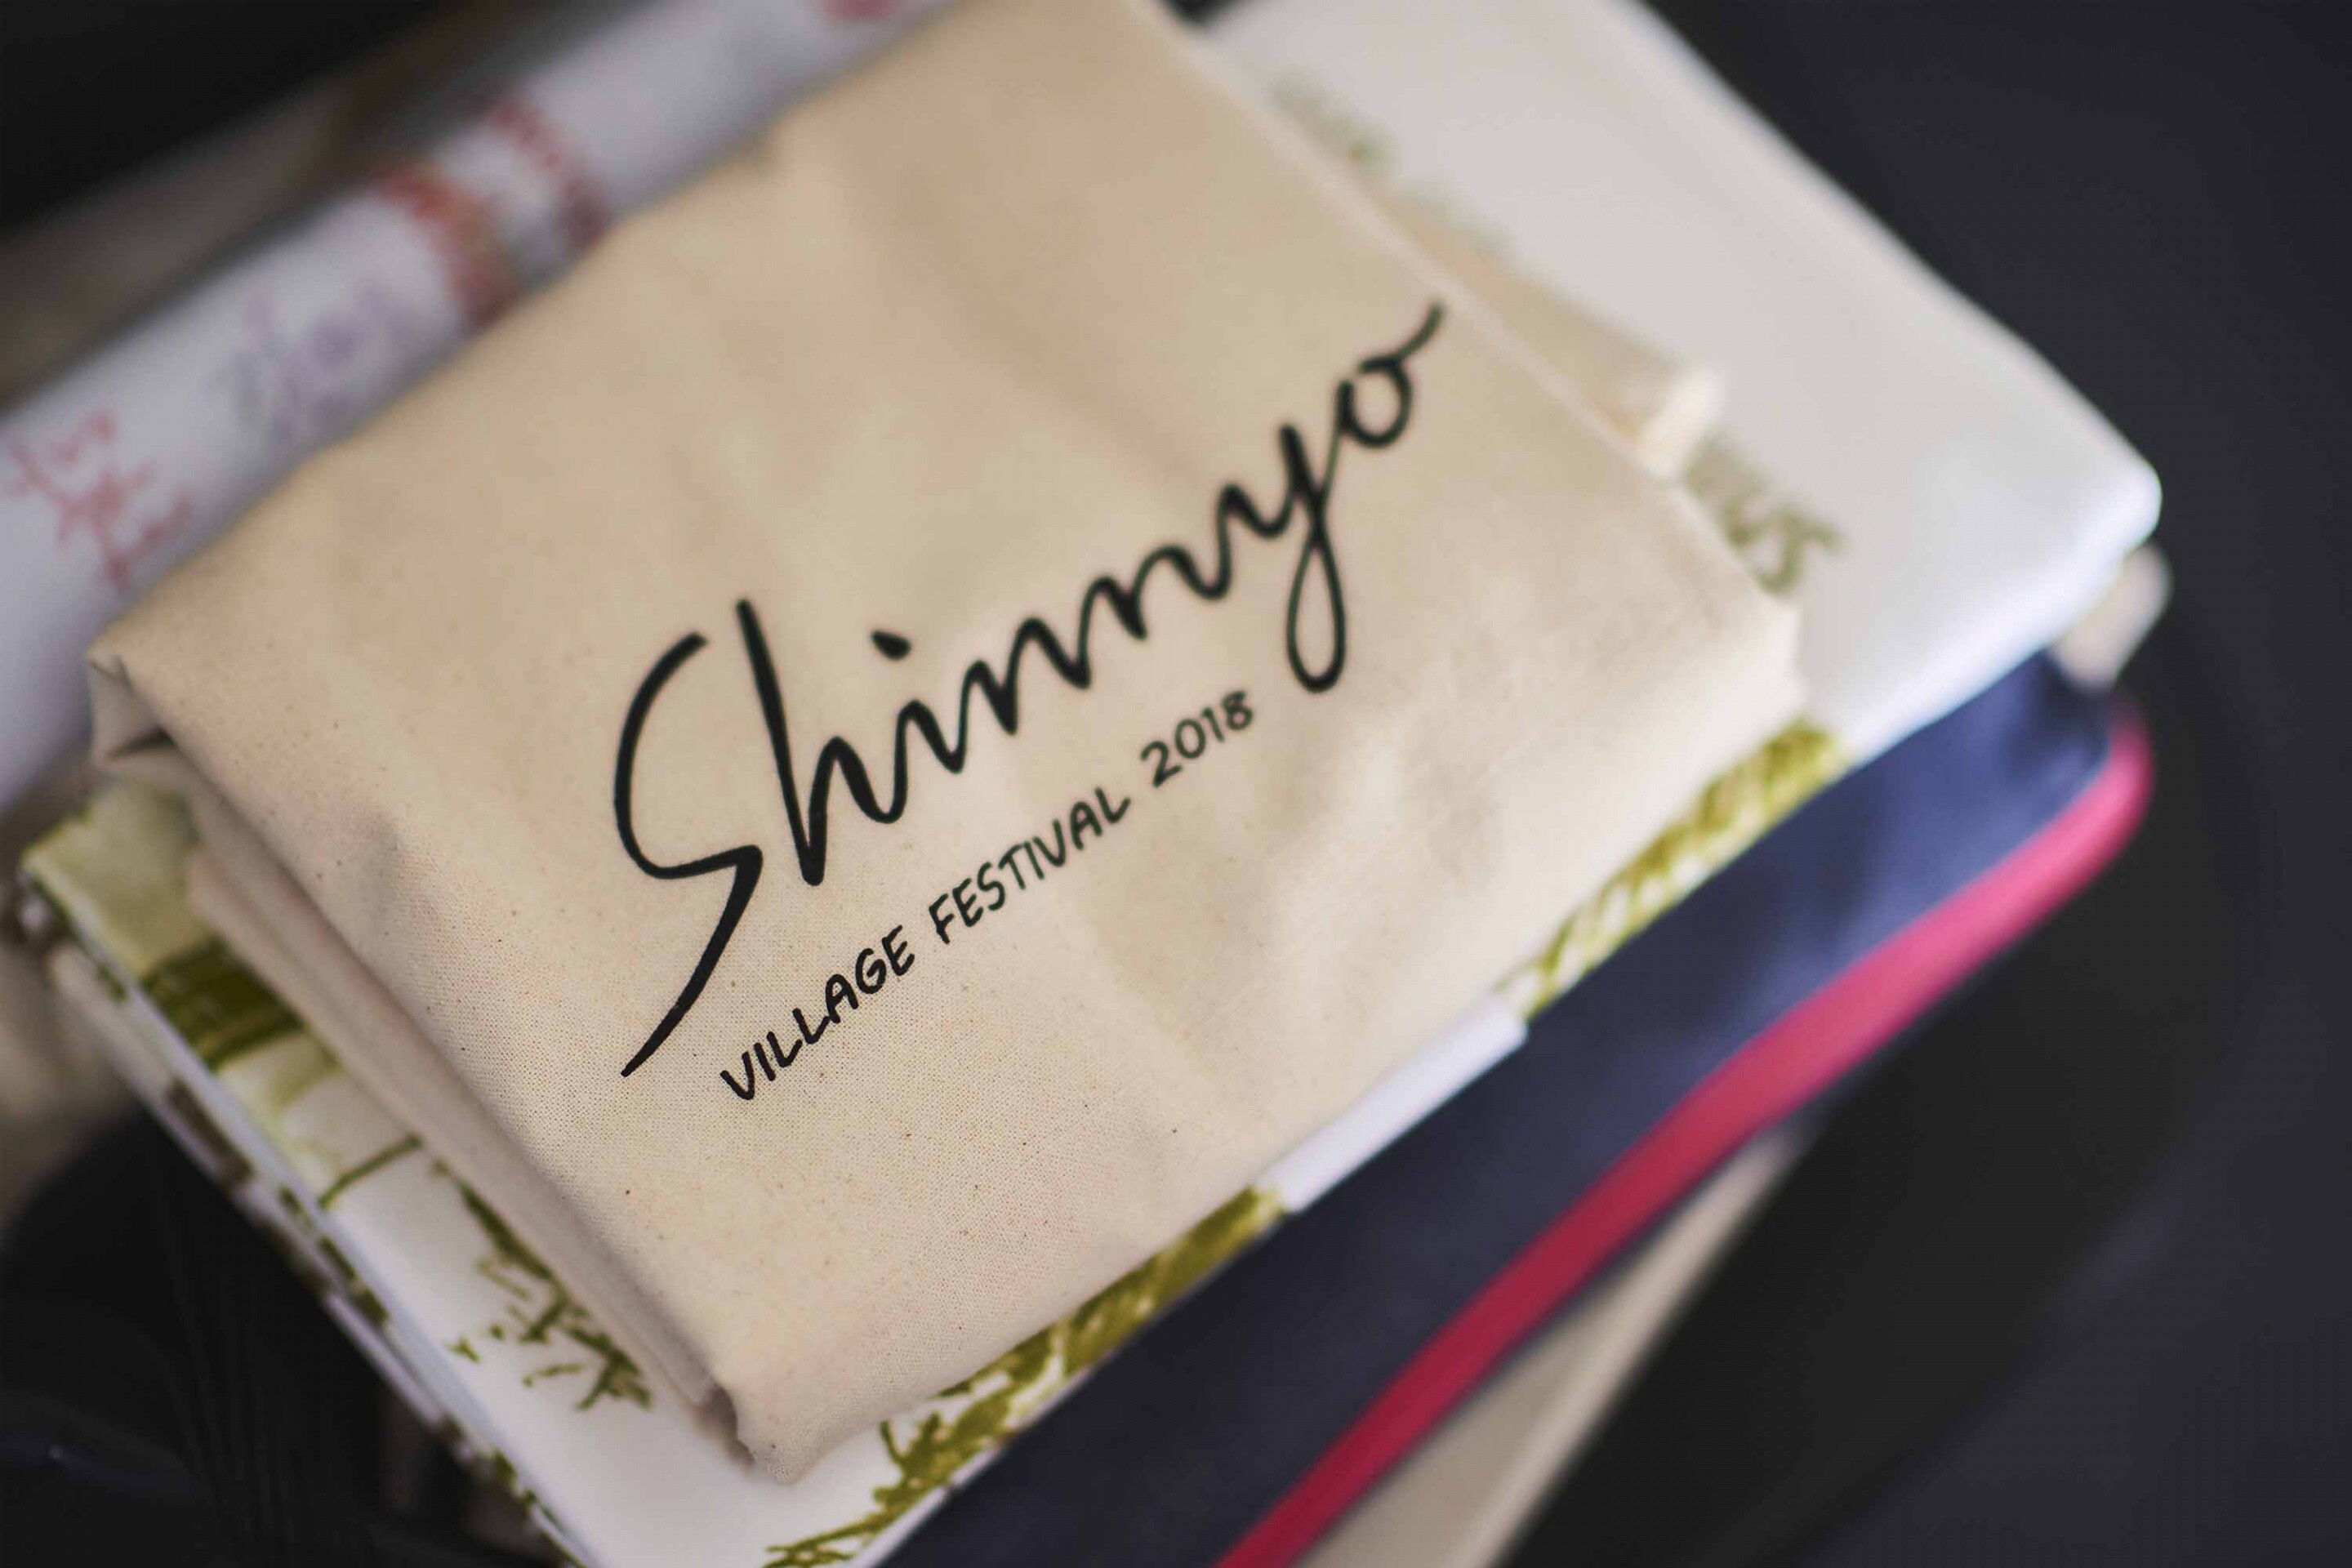 Shinnyo branding